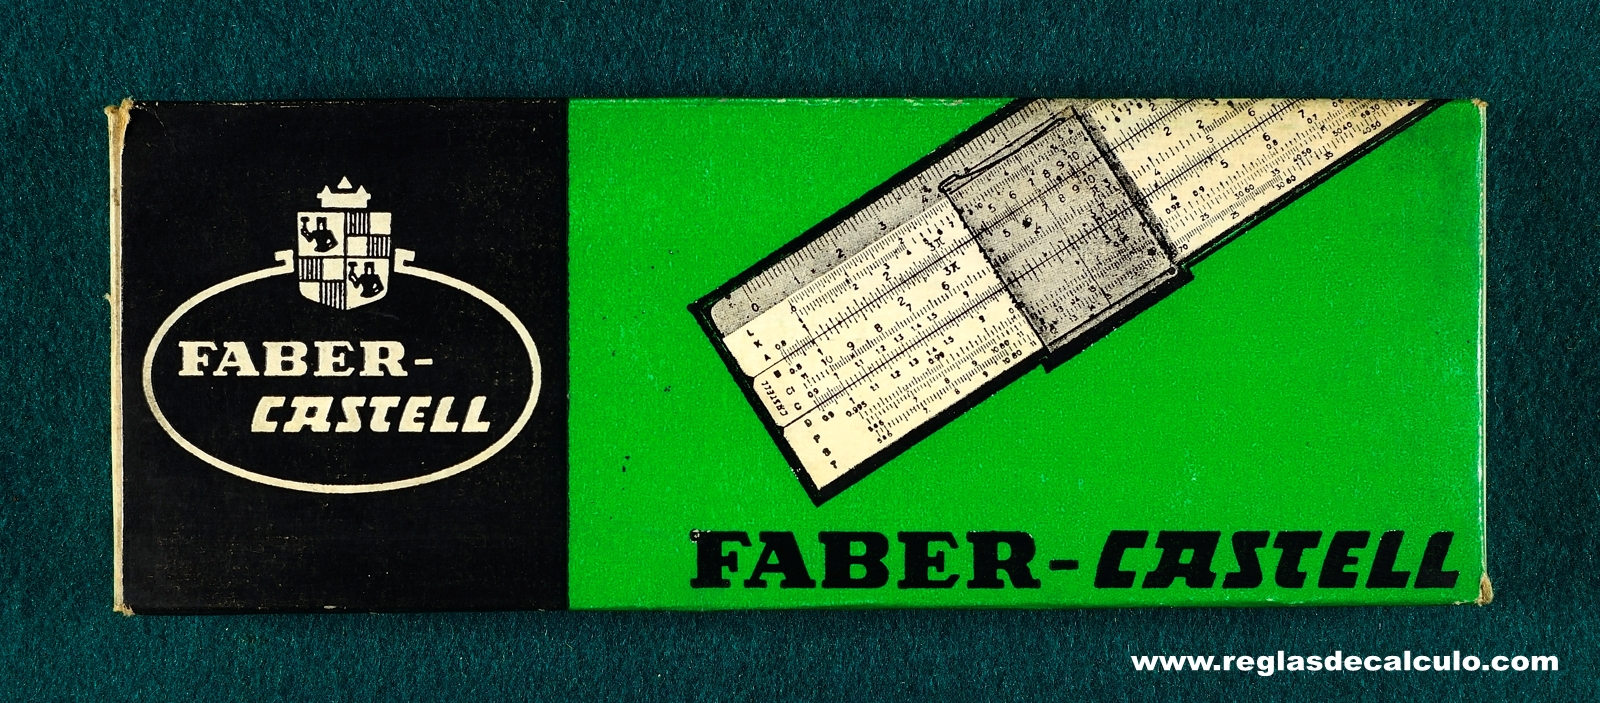 Faber Castell 67/98b Electro Regla de Calculo Slide rule